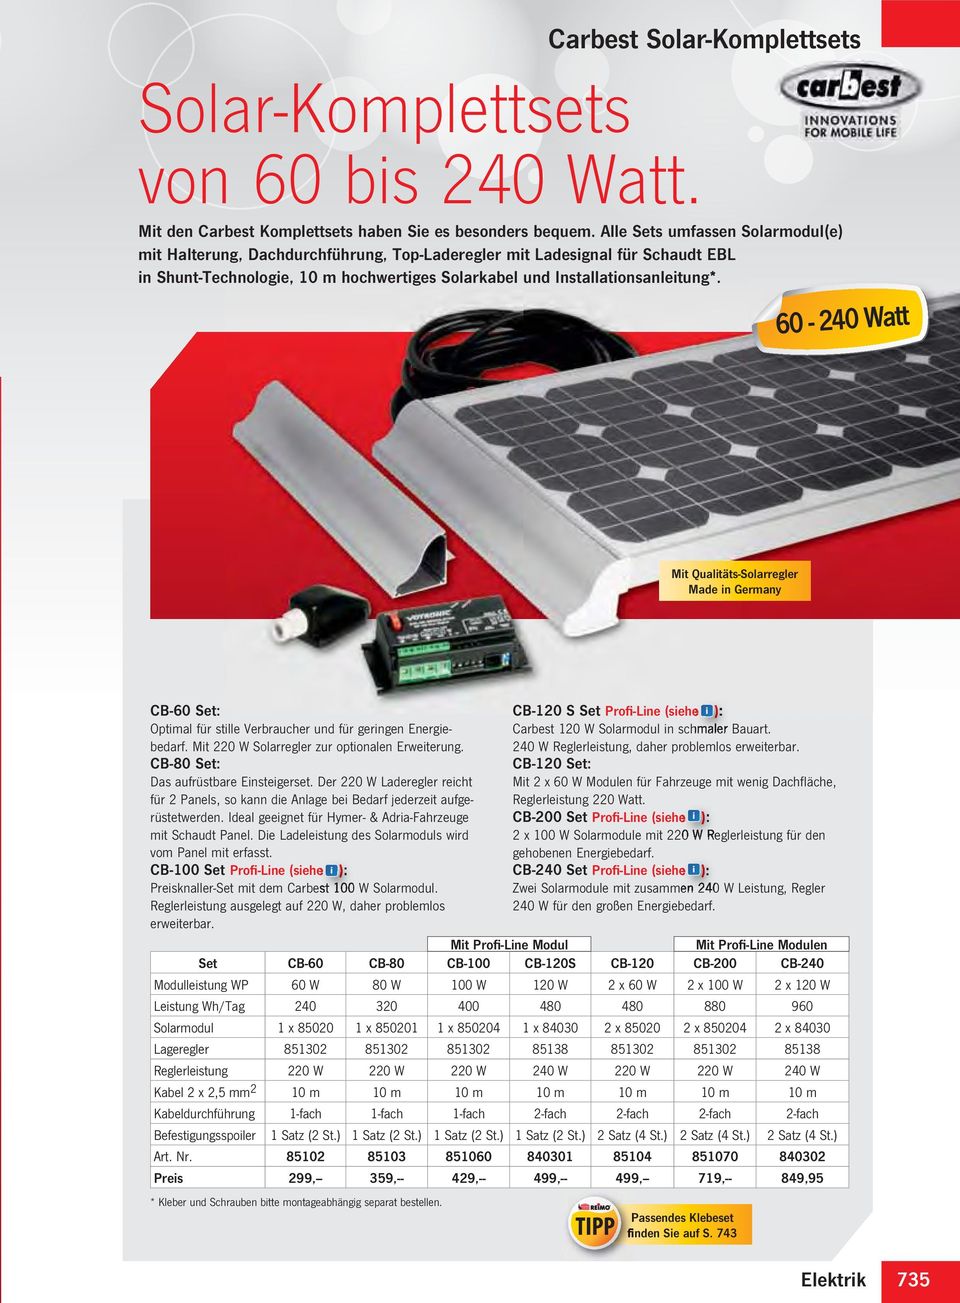 60-240 Watt Mit Qualitäts-Solarregler Made in Germany CB-60 Set: Optimal für stille Verbraucher und für geringen Energiebedarf. Mit 220 W Solarregler zur optionalen Erweiterung.